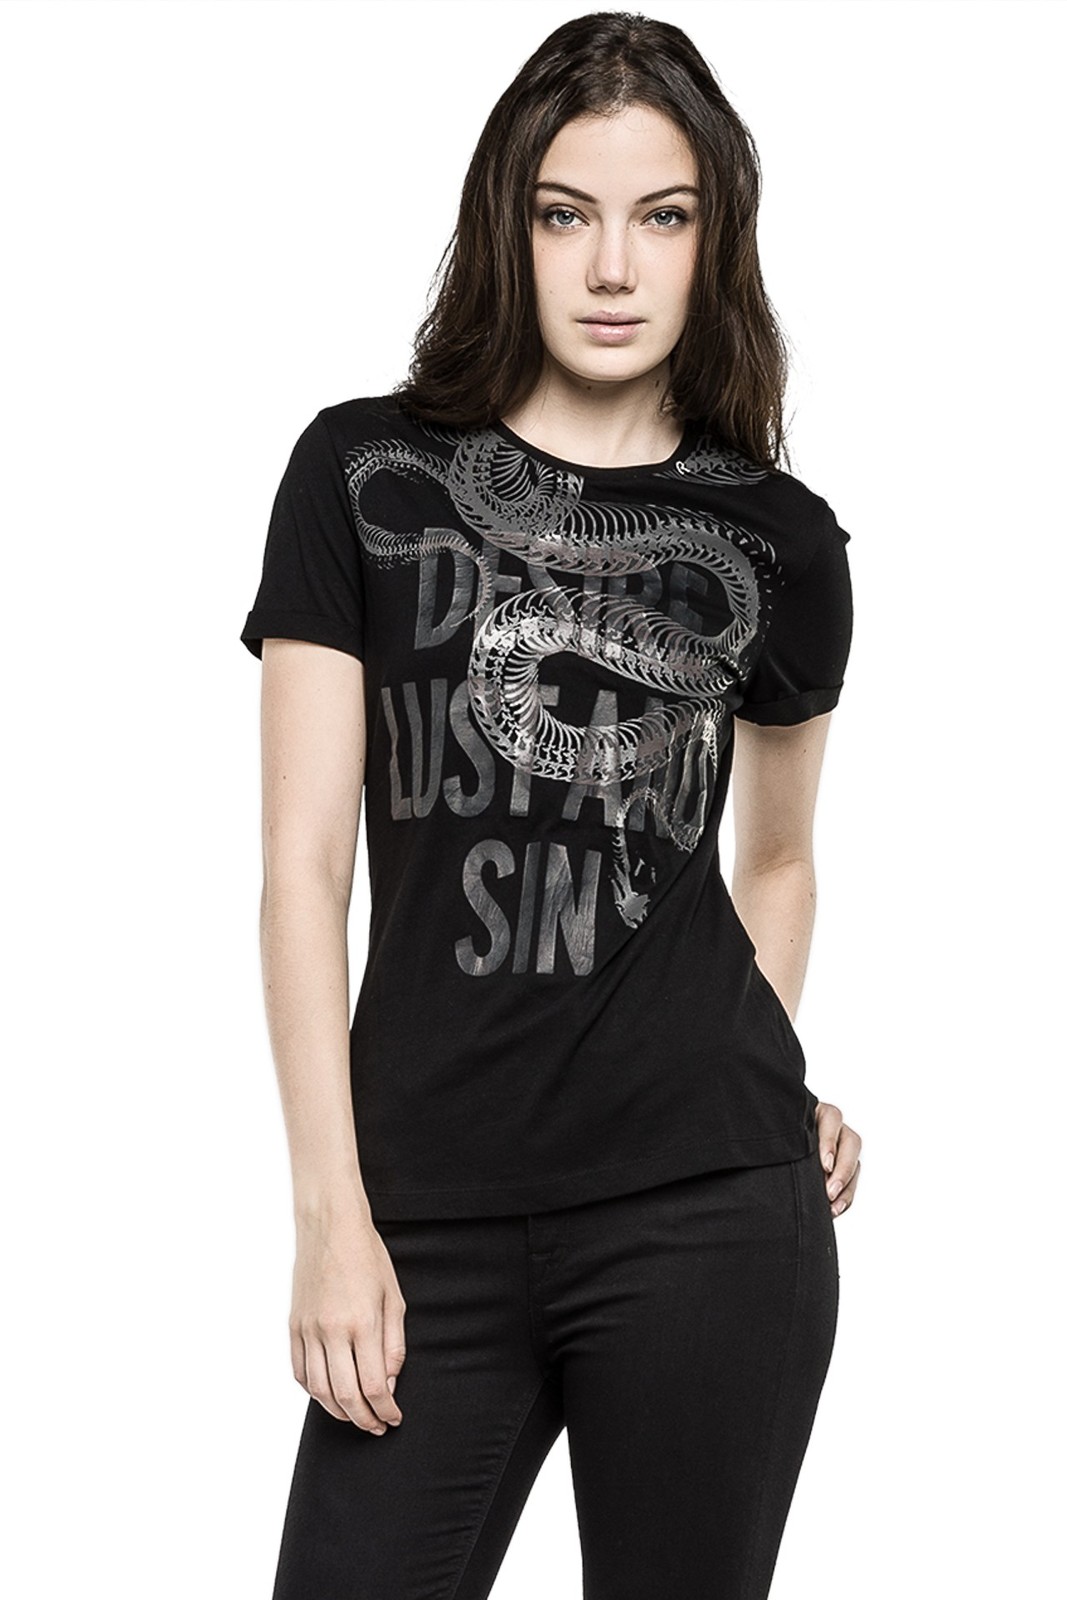 Replay márkás női fekete T-shirt fotója